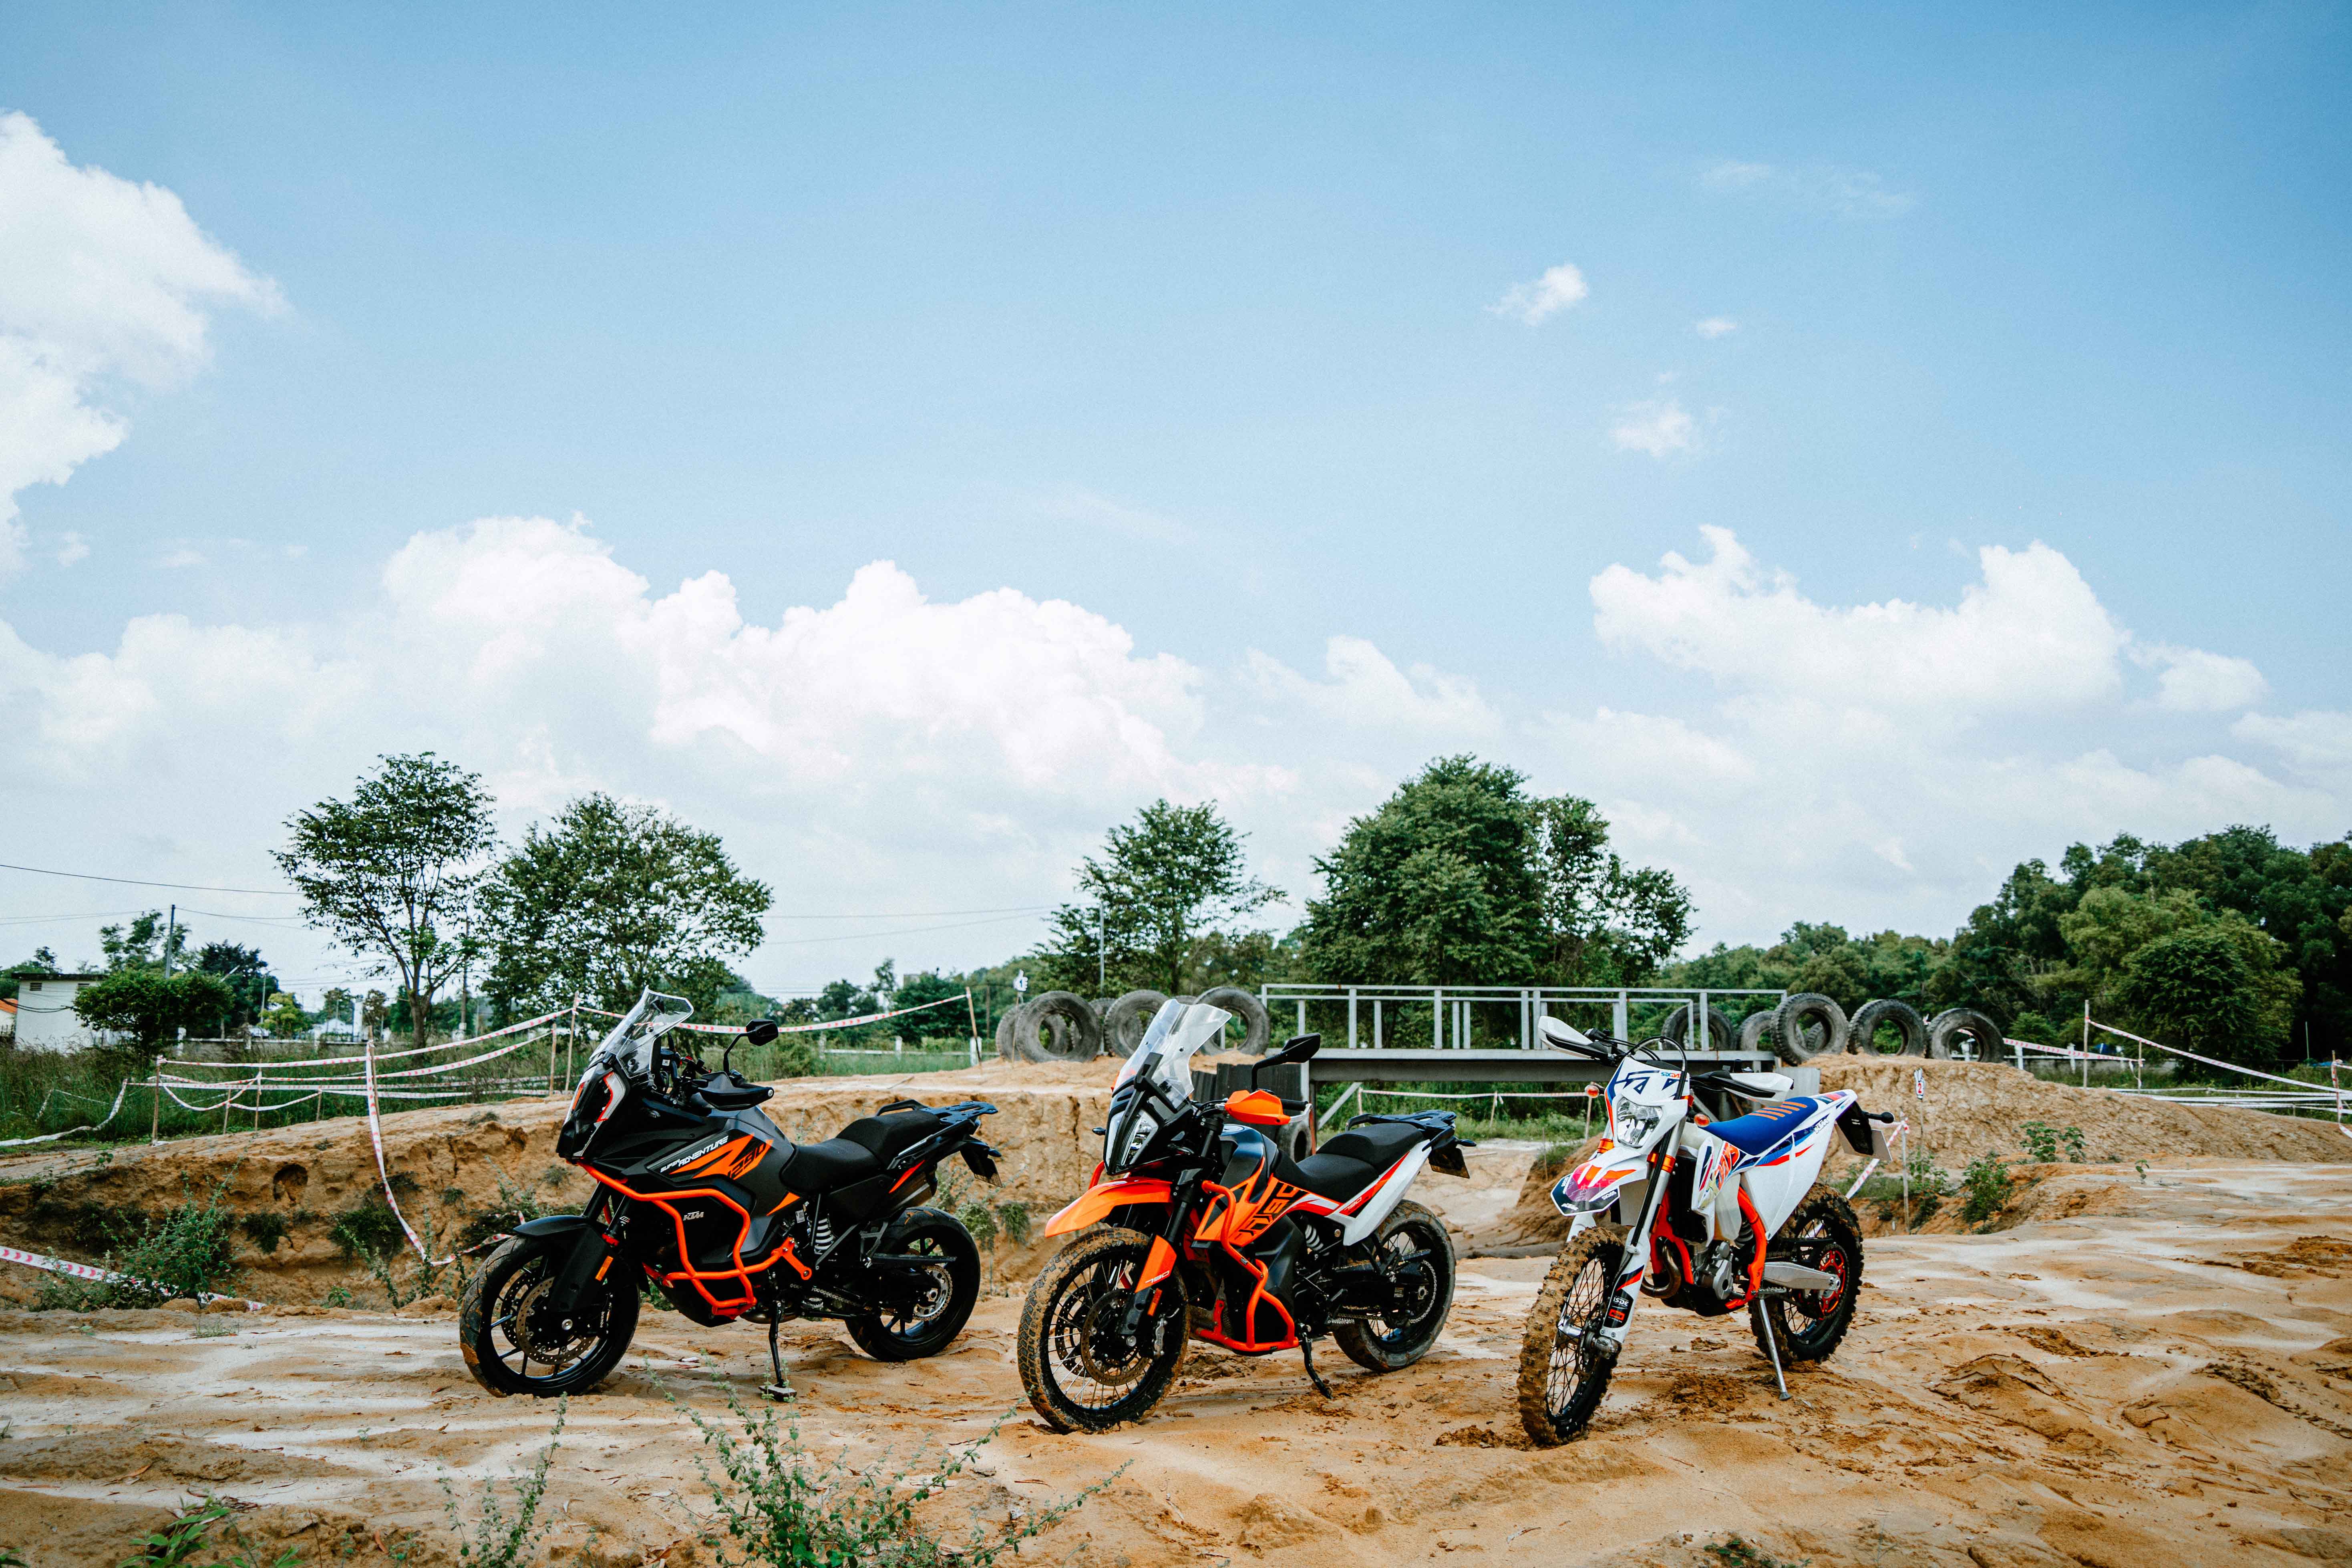 Chương trình KTM Riders Academy sắp được tổ chức tại Việt Nam Các mẫu Adventure và Dirtbike nổi tiếng của KTM.jpg